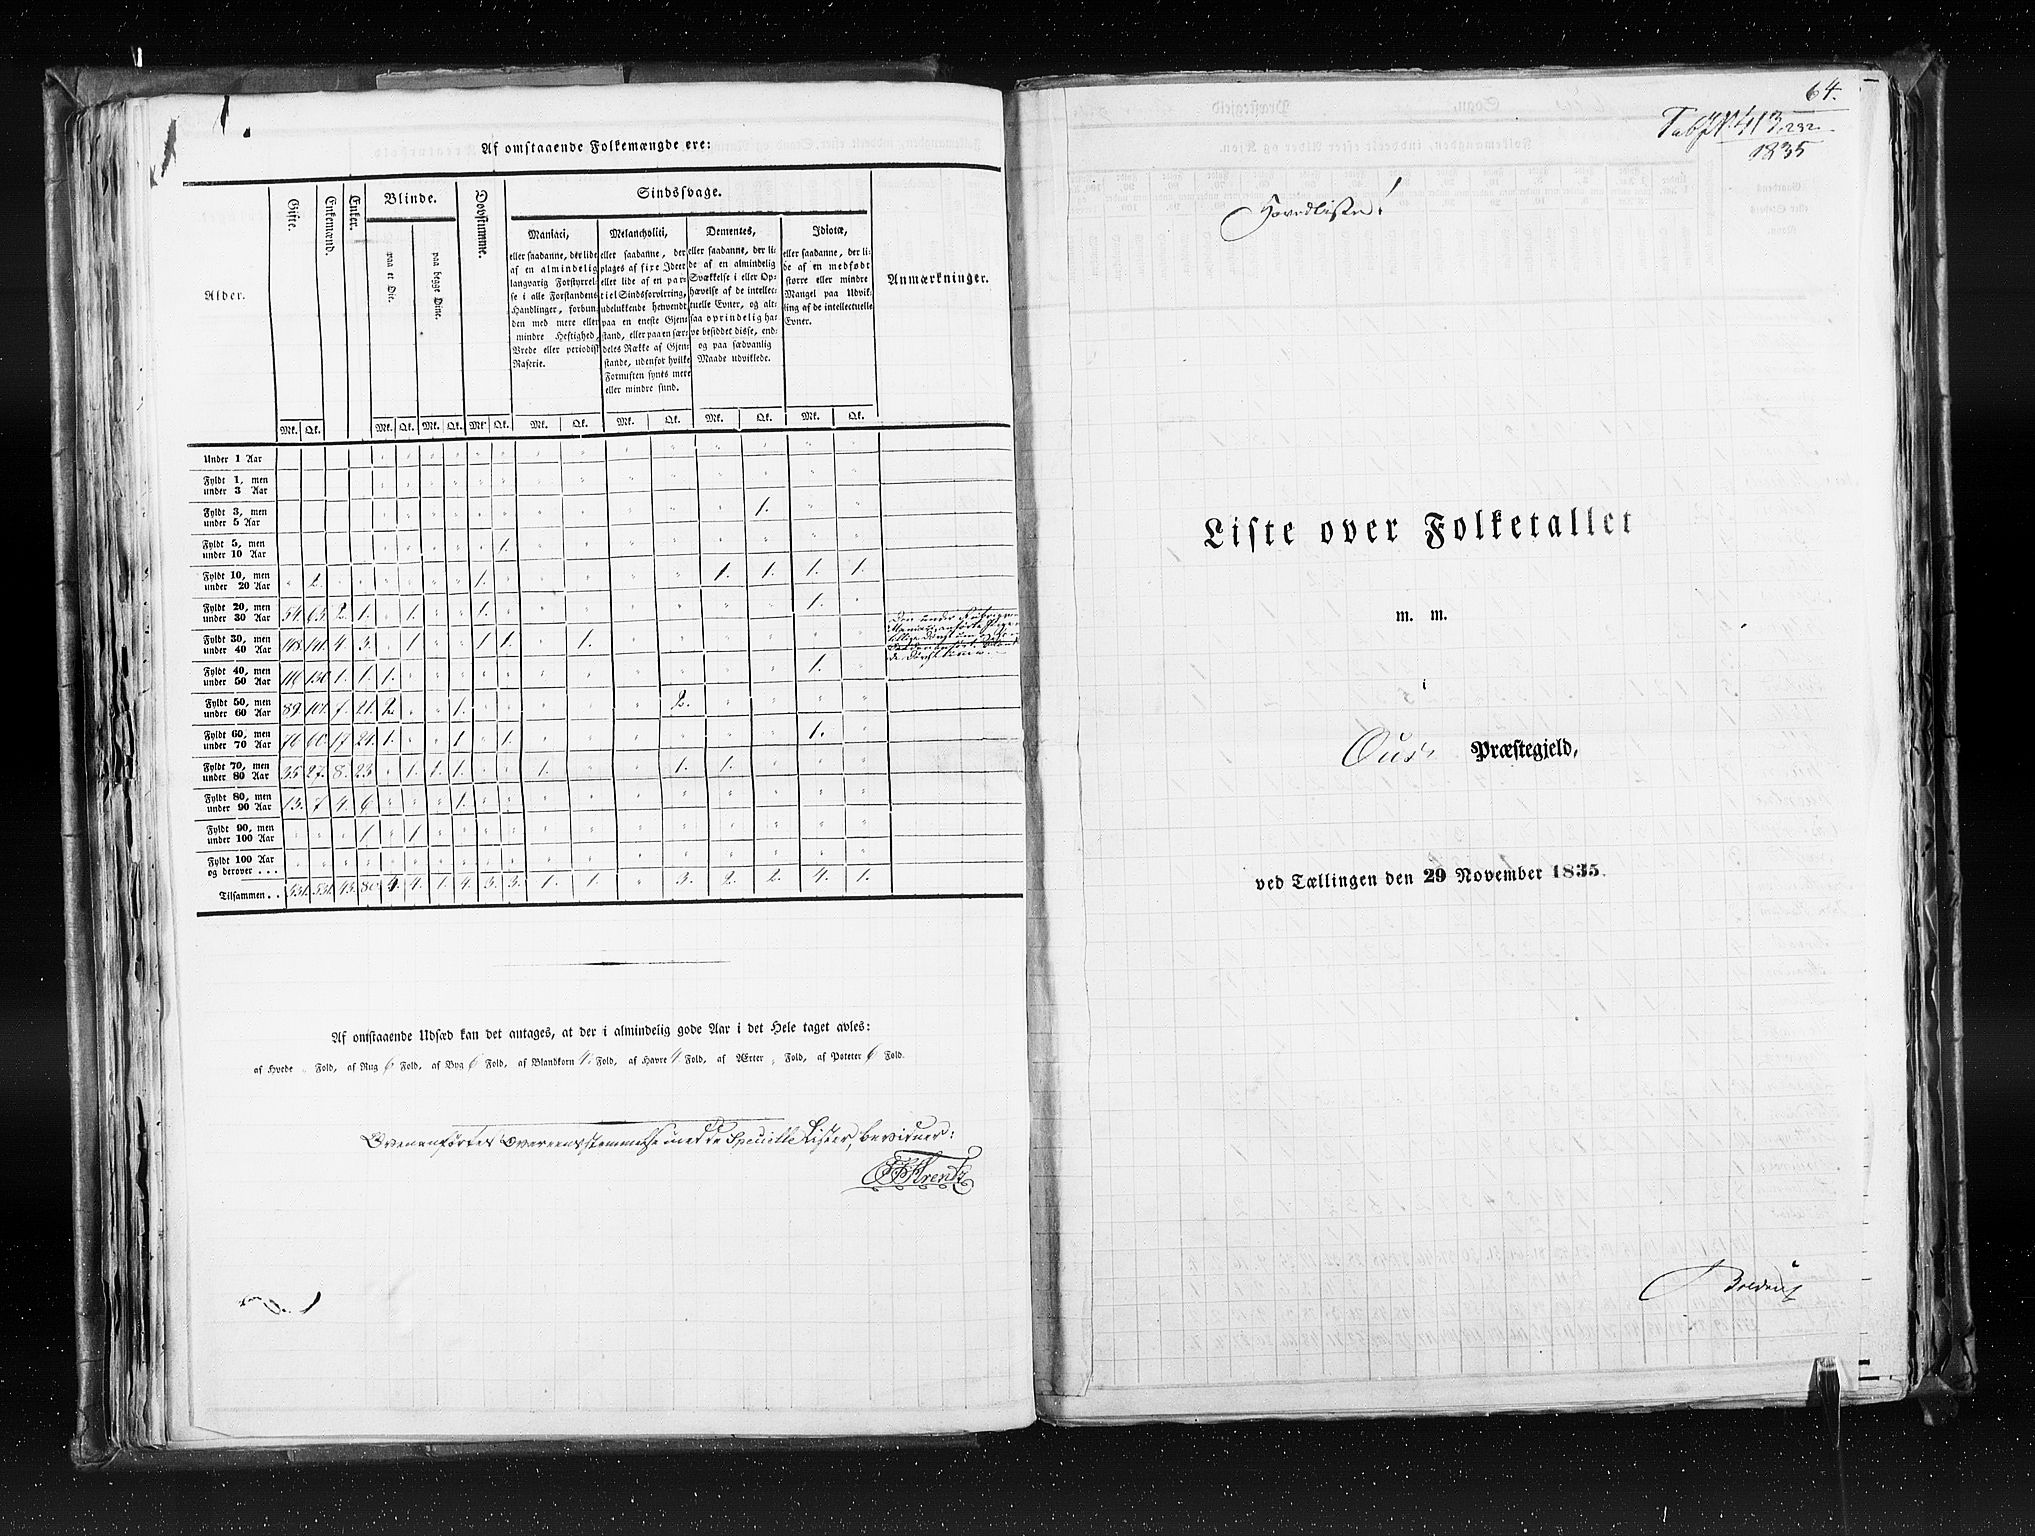 RA, Census 1835, vol. 7: Søndre Bergenhus amt og Nordre Bergenhus amt, 1835, p. 64